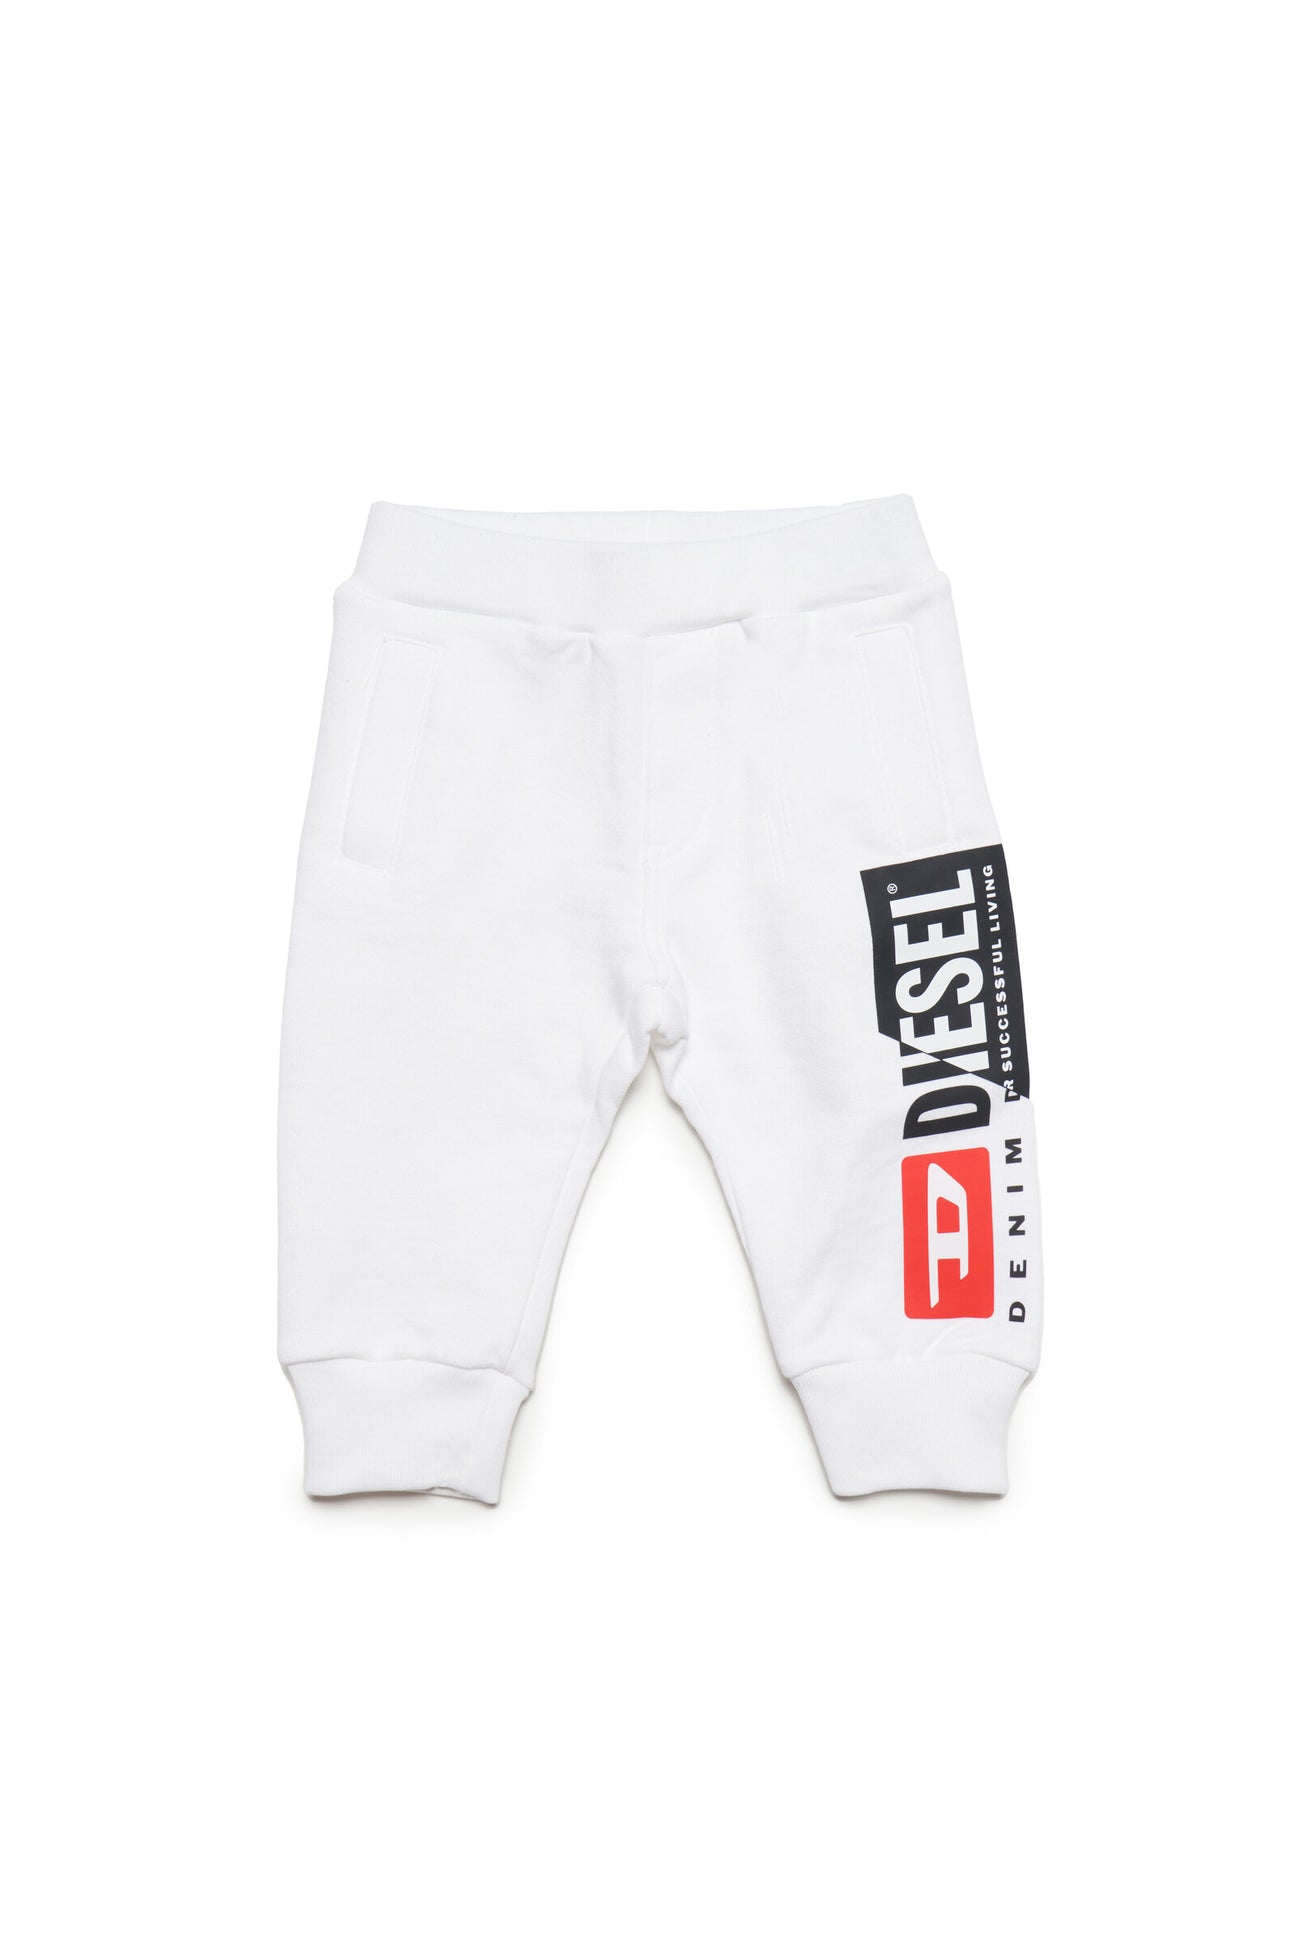 Pantalón jogger blanco con logotipo Diesel double y bolsillo trasero 